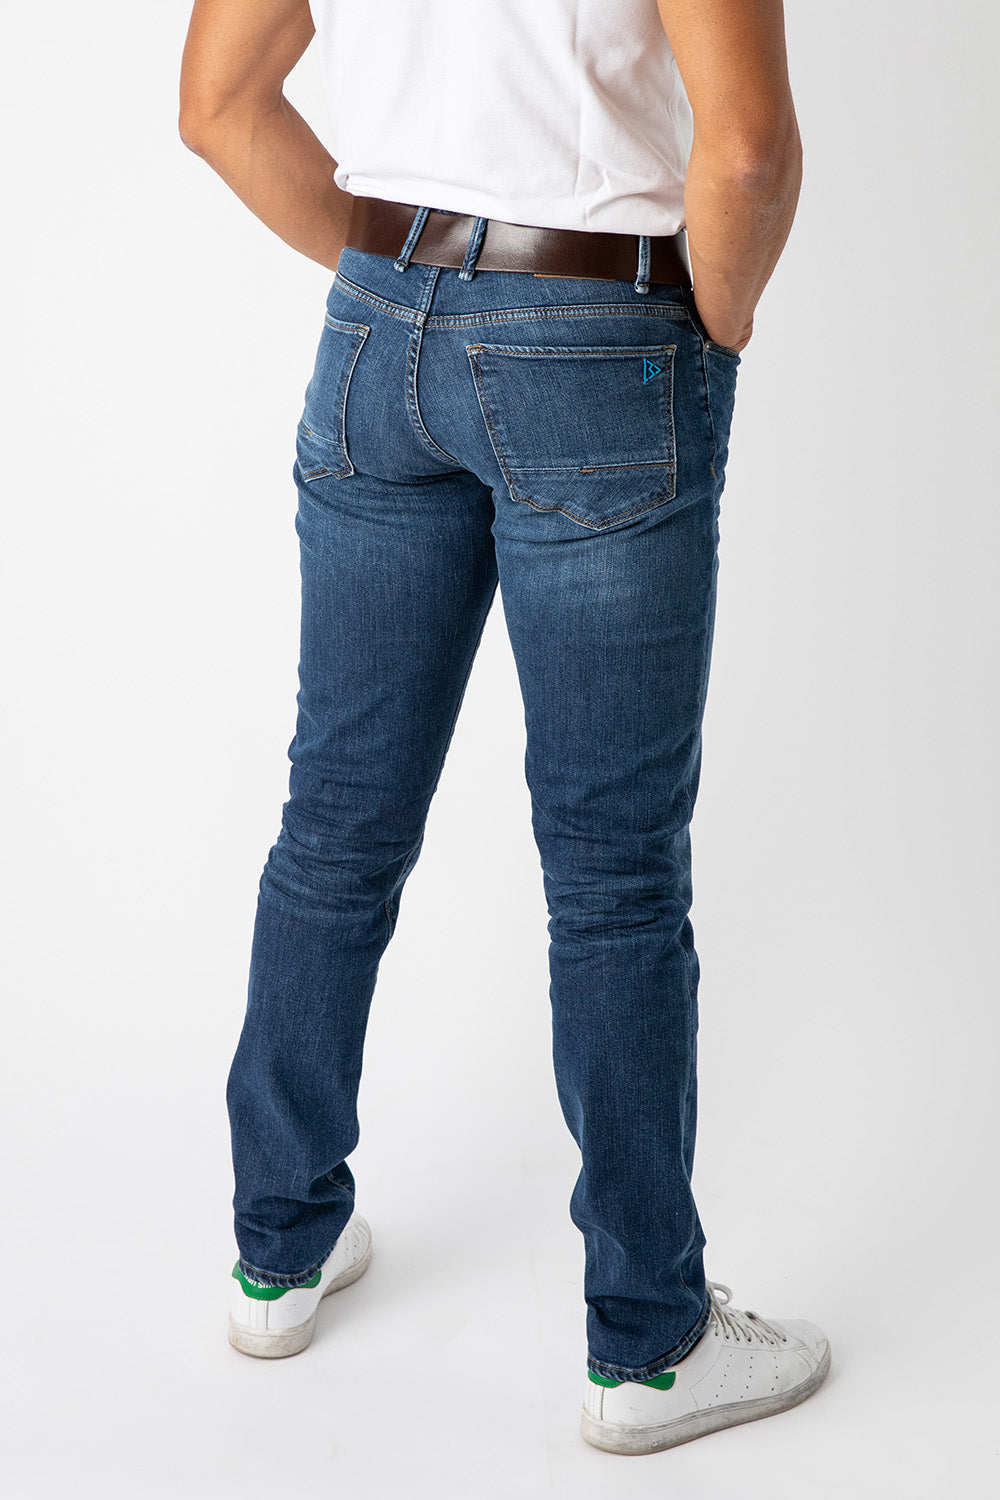 Jeans homme - Achat en ligne